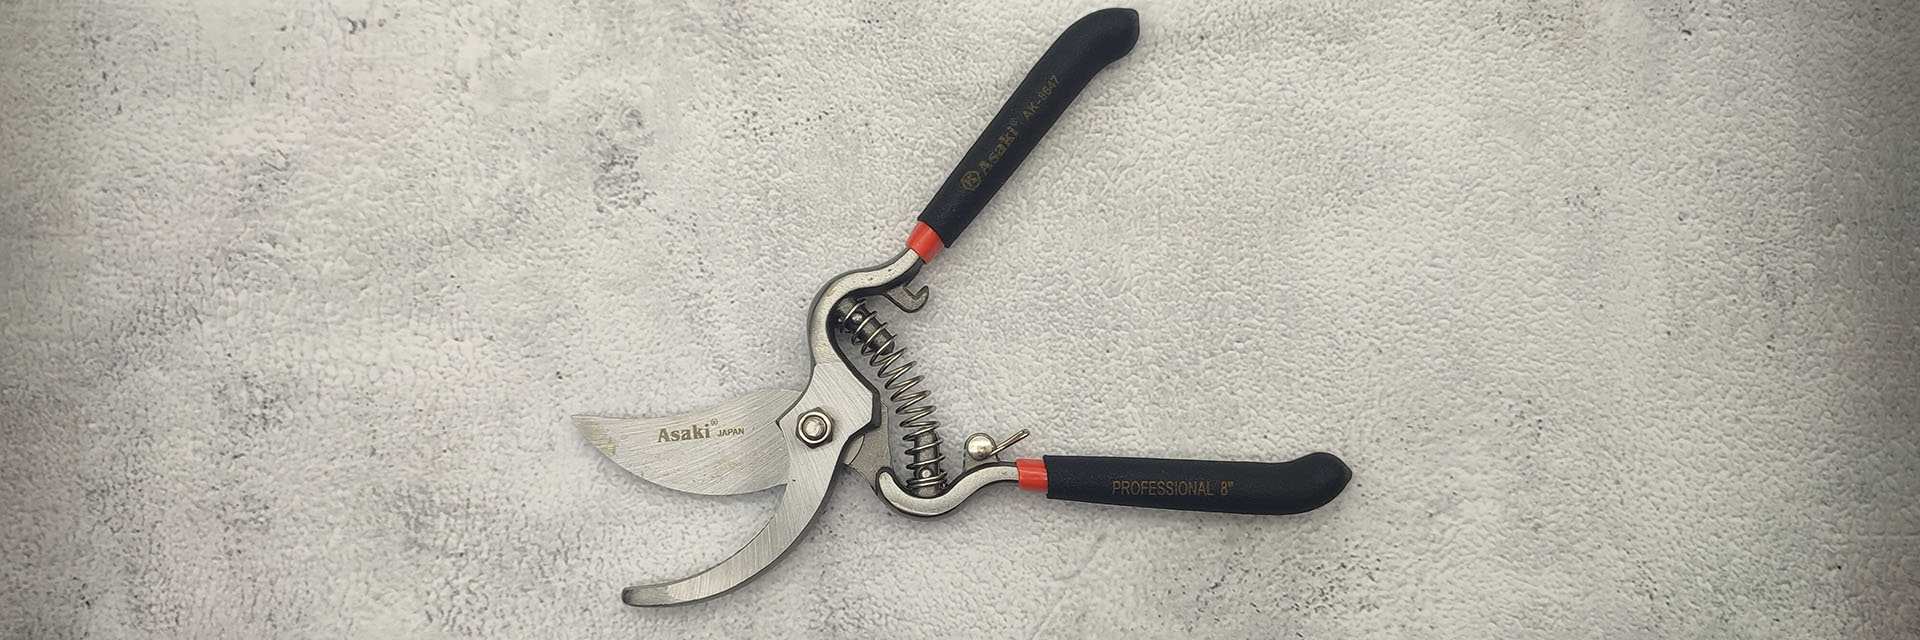 Cutting Tools - Kéo Asaki